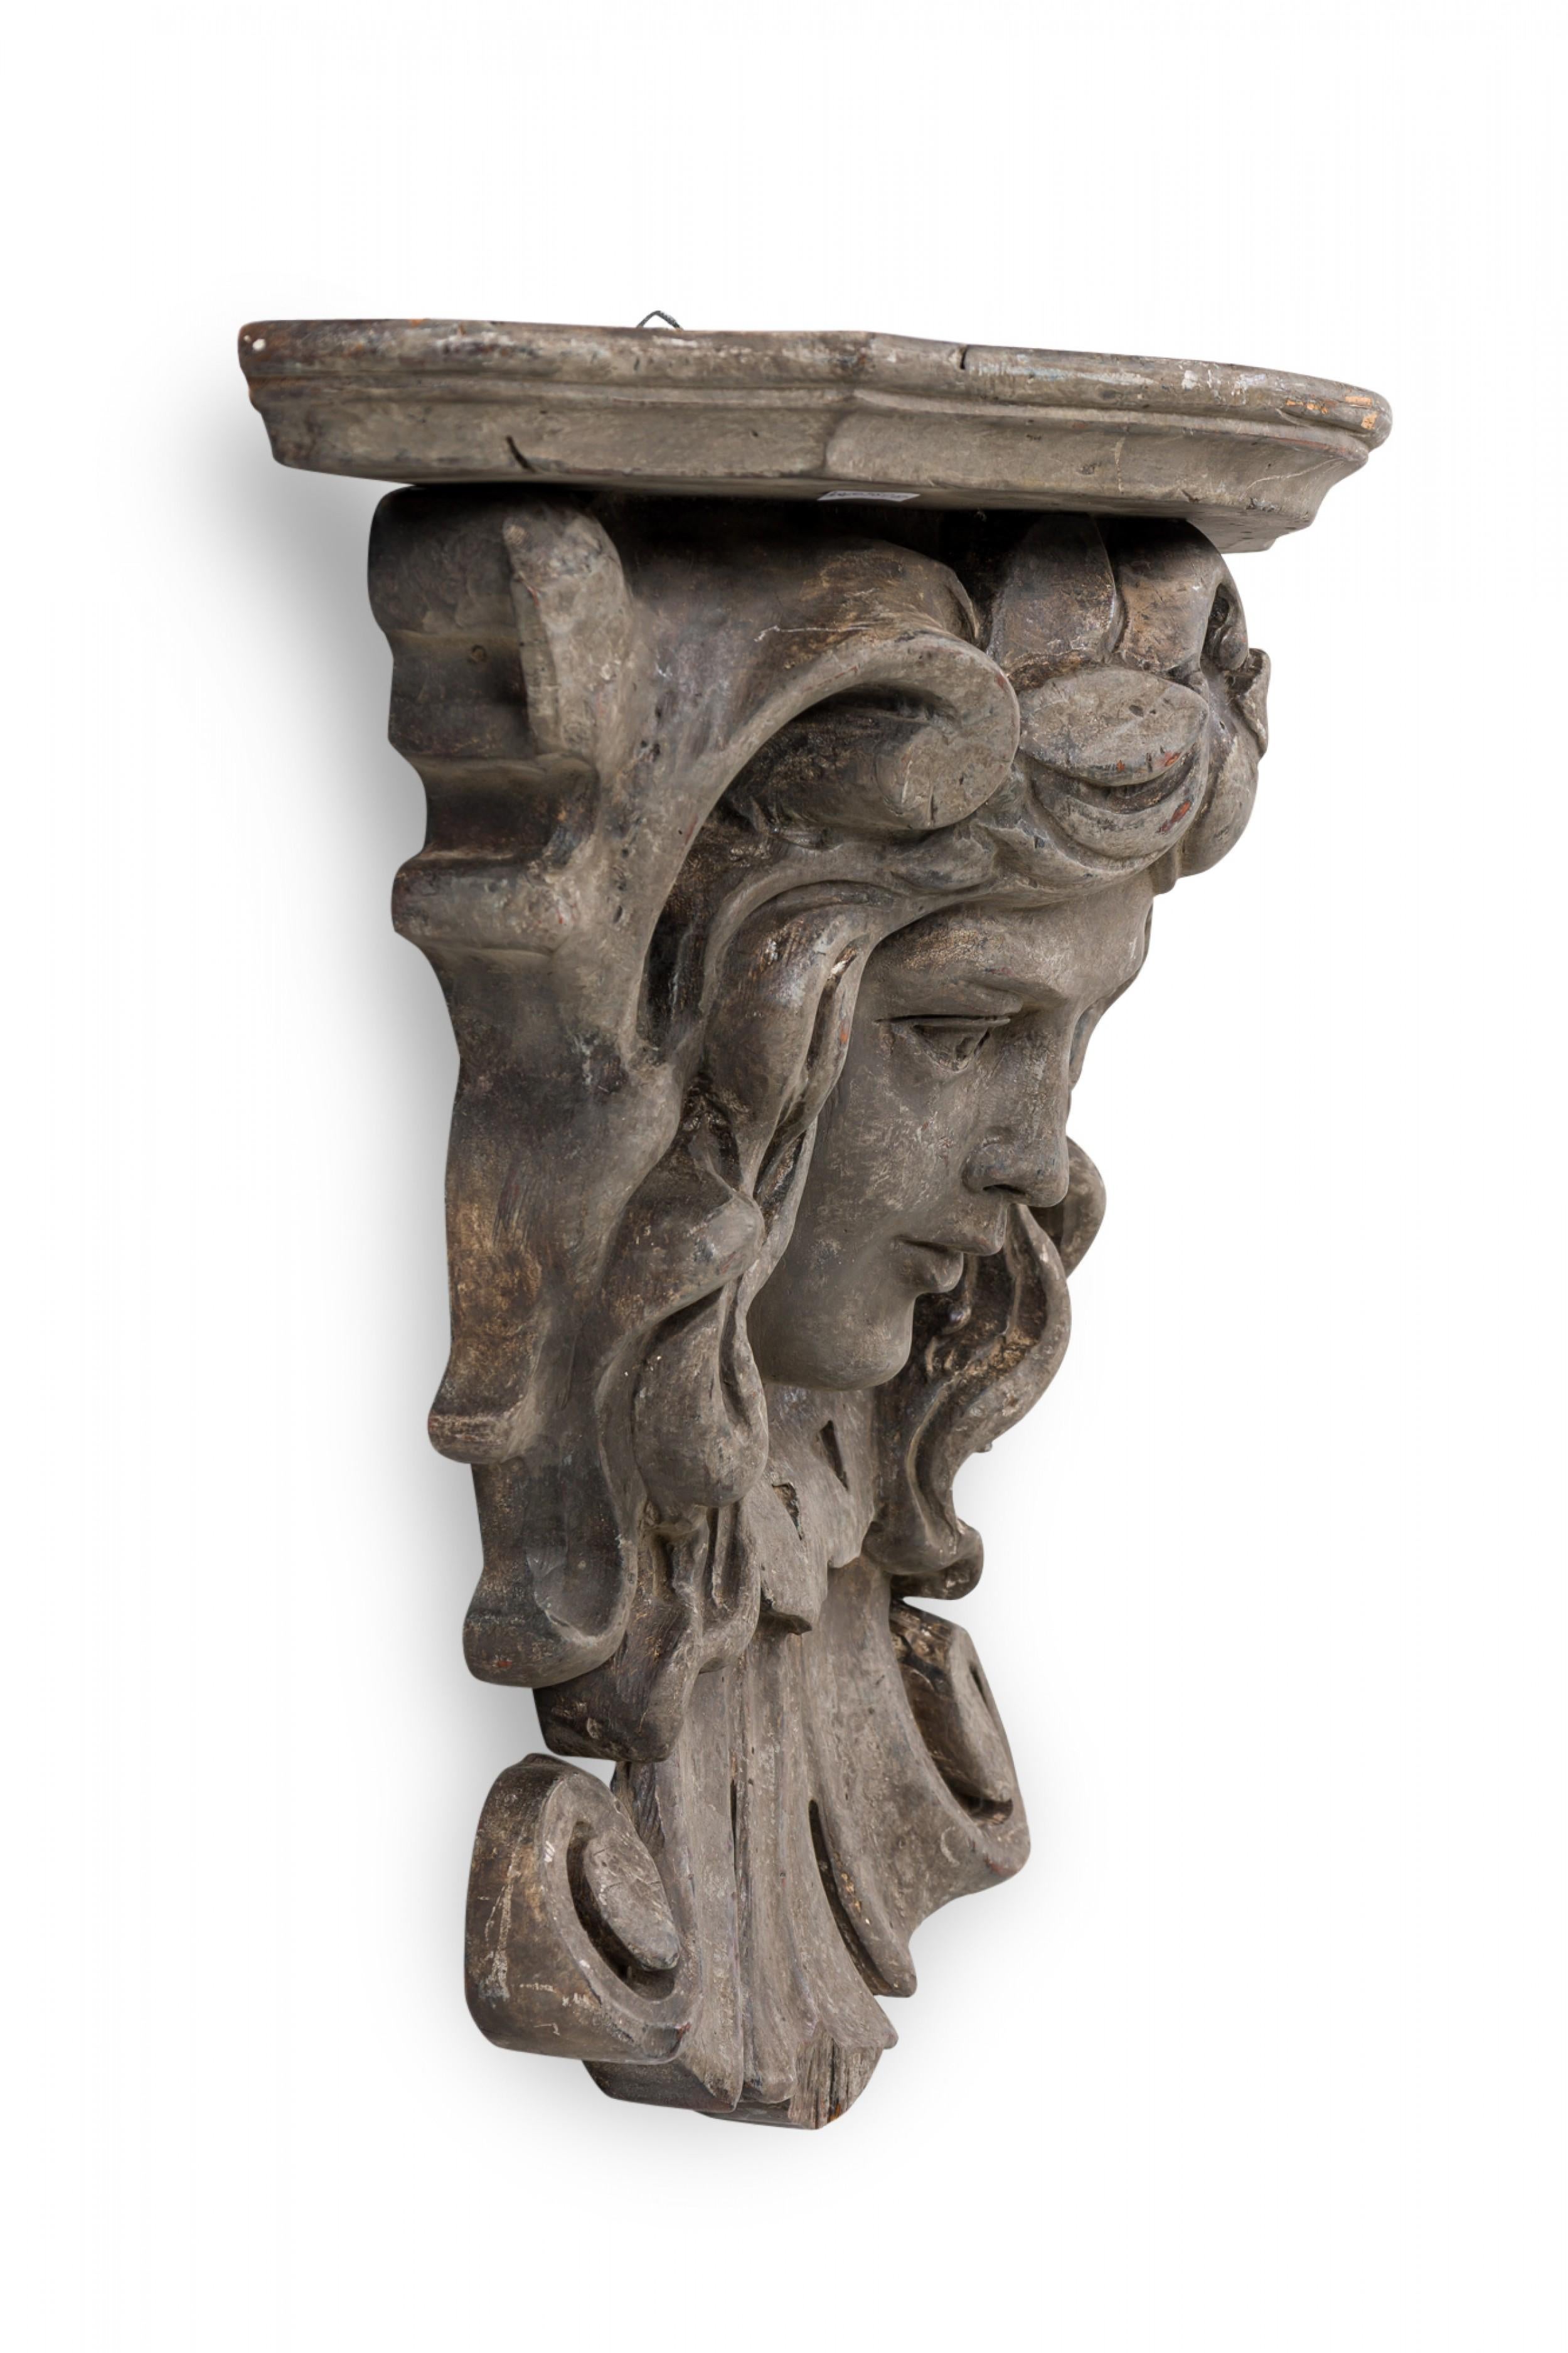 Italienische Wandkonsole / Regal / architektonisches Element aus Holz im Rokokostil mit geschnitztem Gesicht unter einer oberen Ablage mit geschnitzter und geformter abgeschrägter Kante, behandelt mit einer Faux-Bois-Lackierung.